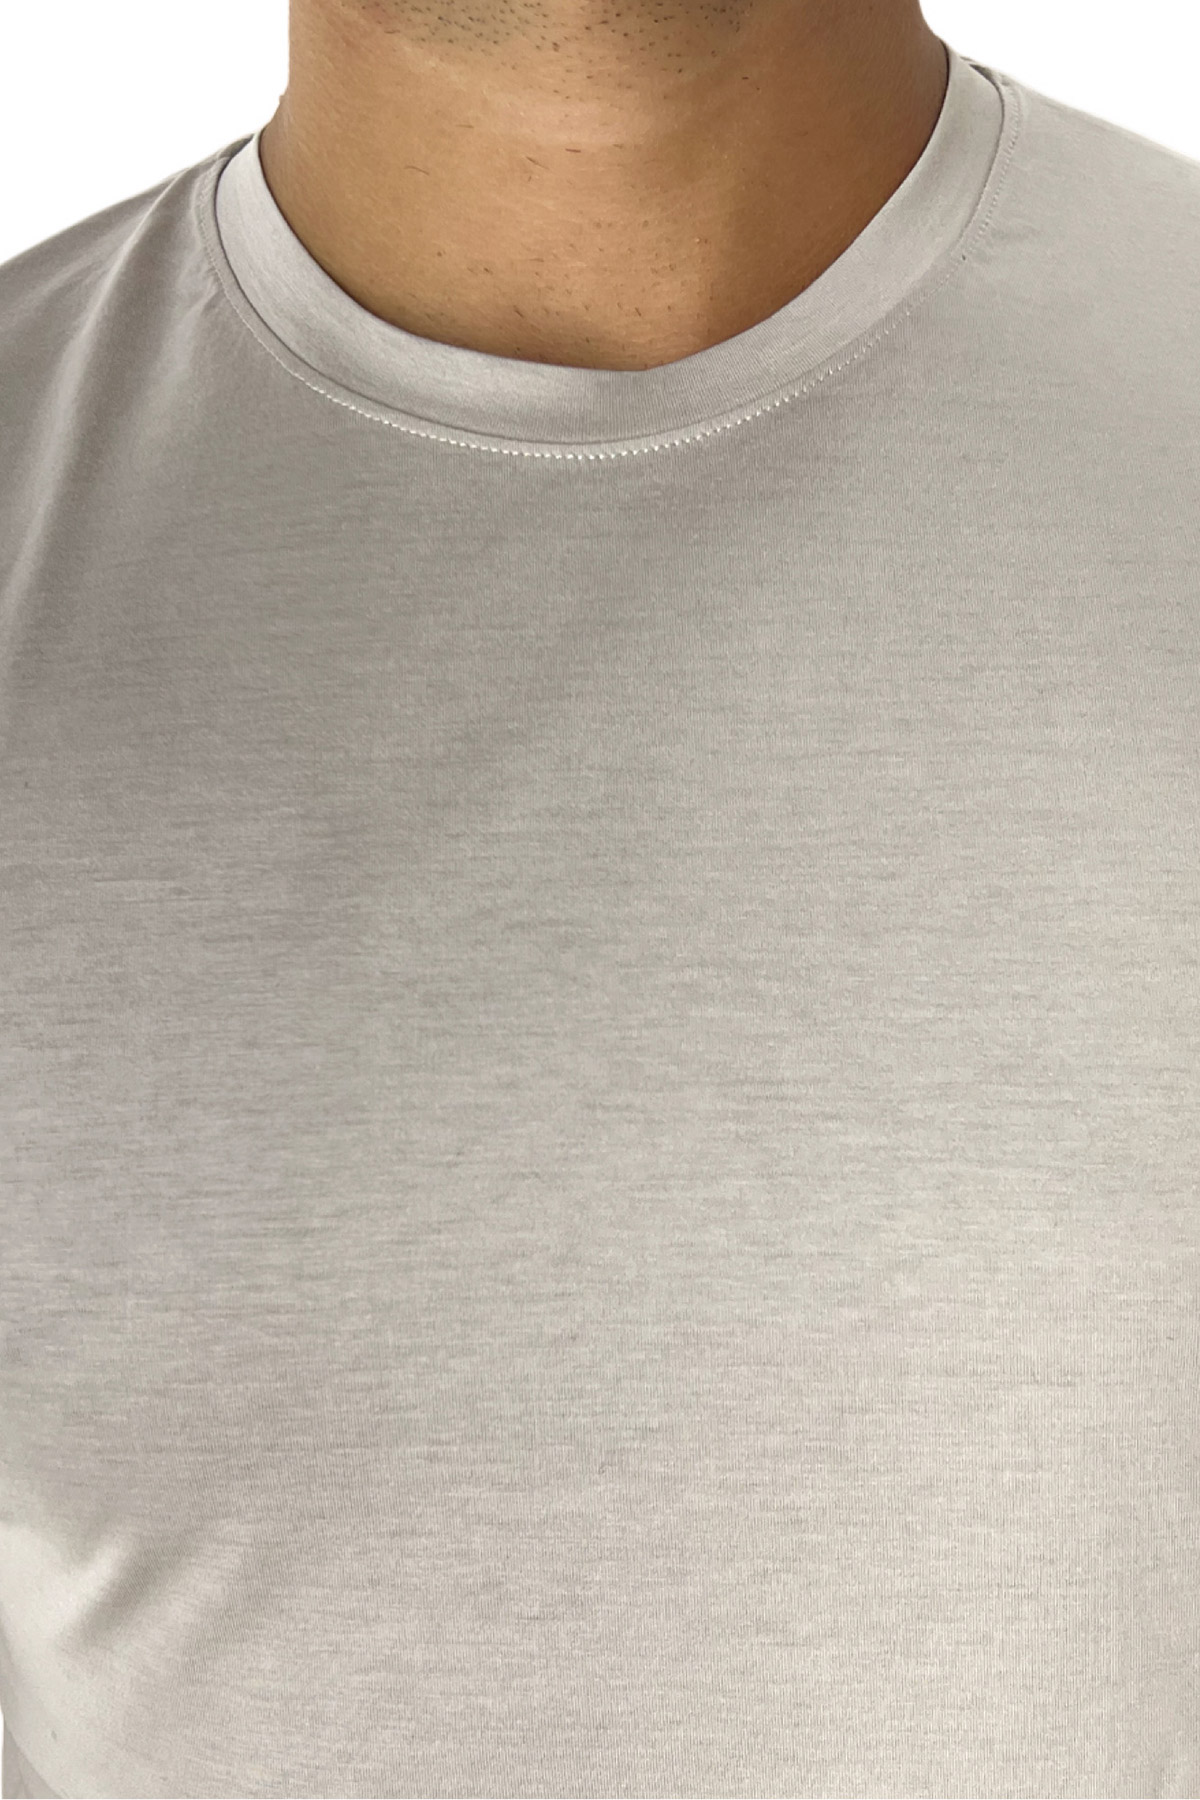 T-shirt da uomo beige in cotone 100% Filo di scozia slim fit tinta unita Made In Italy